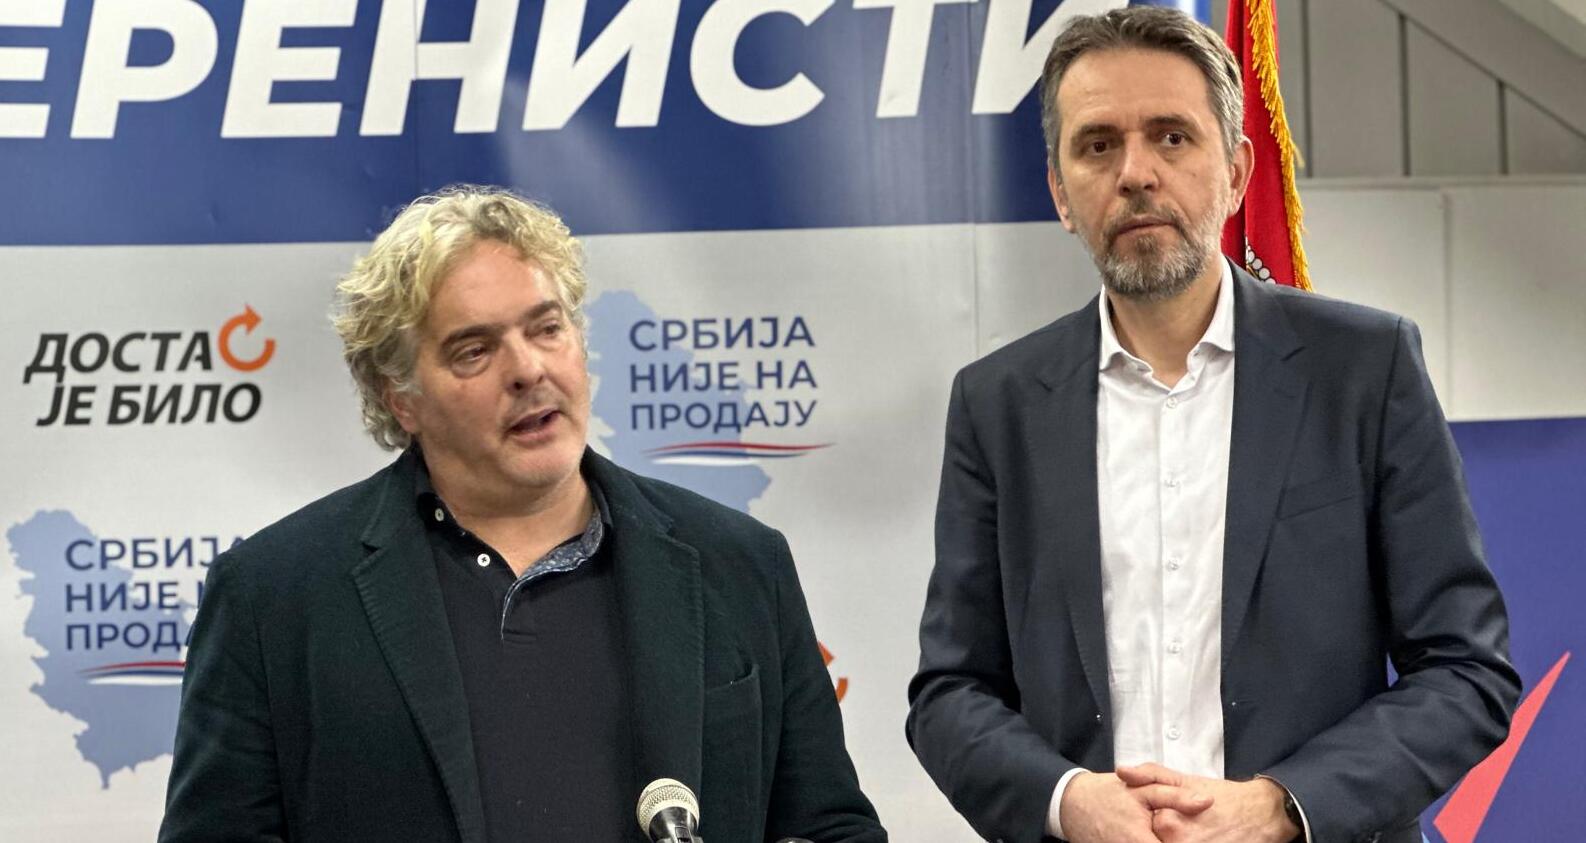 Гајић: Народна странка и Доста је било наступиће у коалицији на локалним изборима